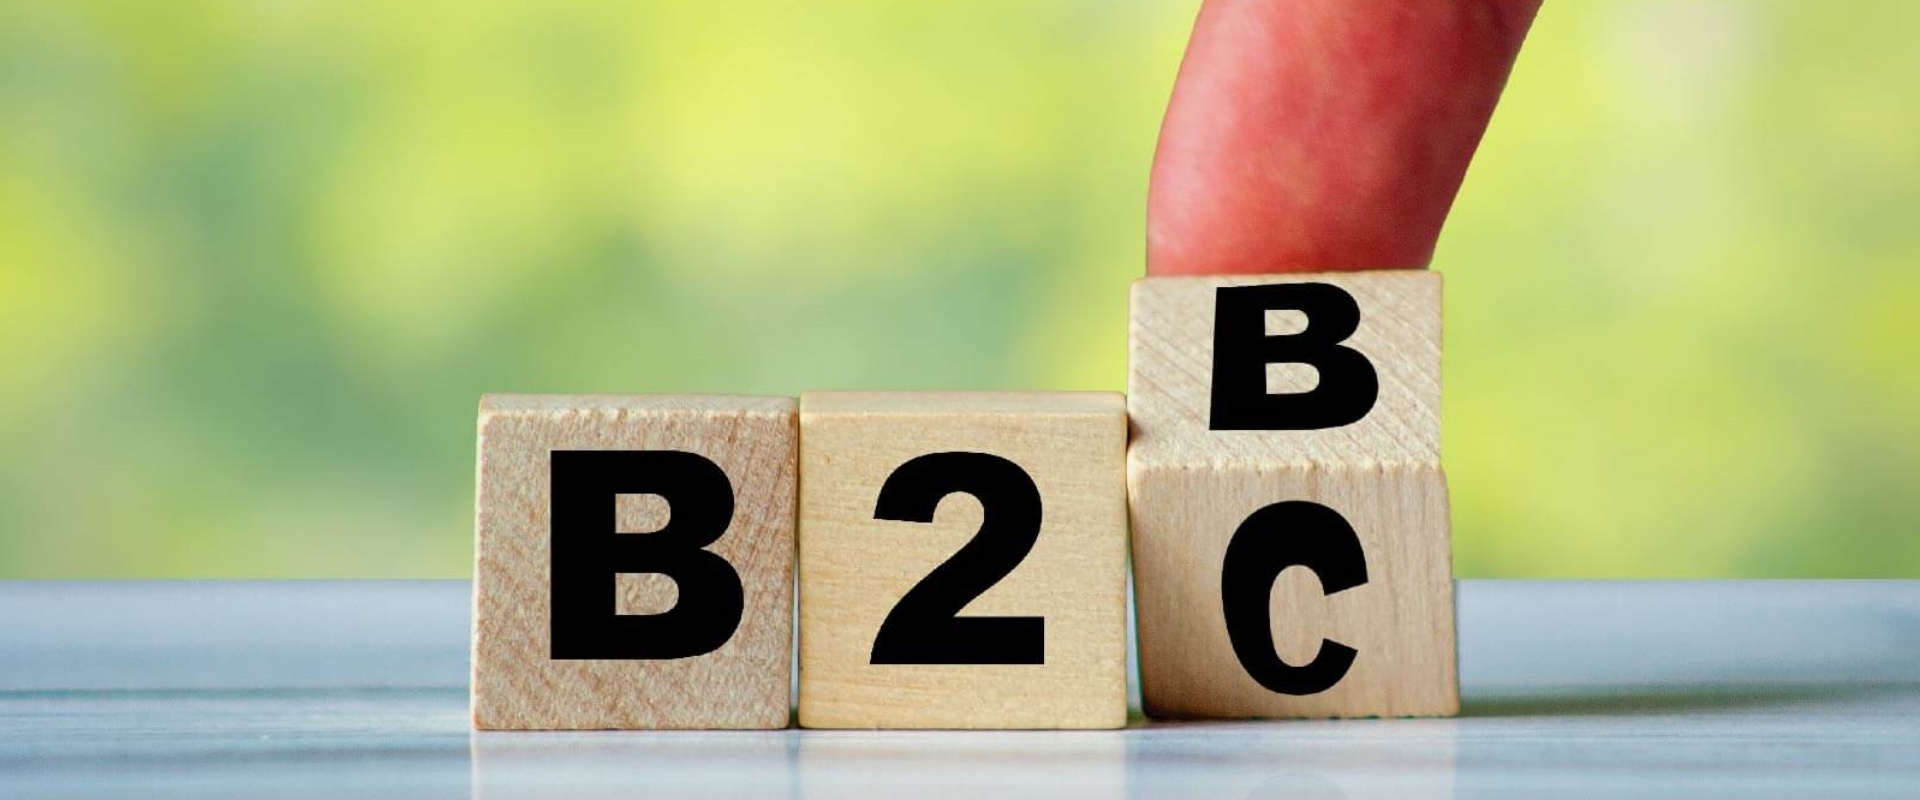 B2C là gì và những mô hình kinh doanh B2C phổ biến